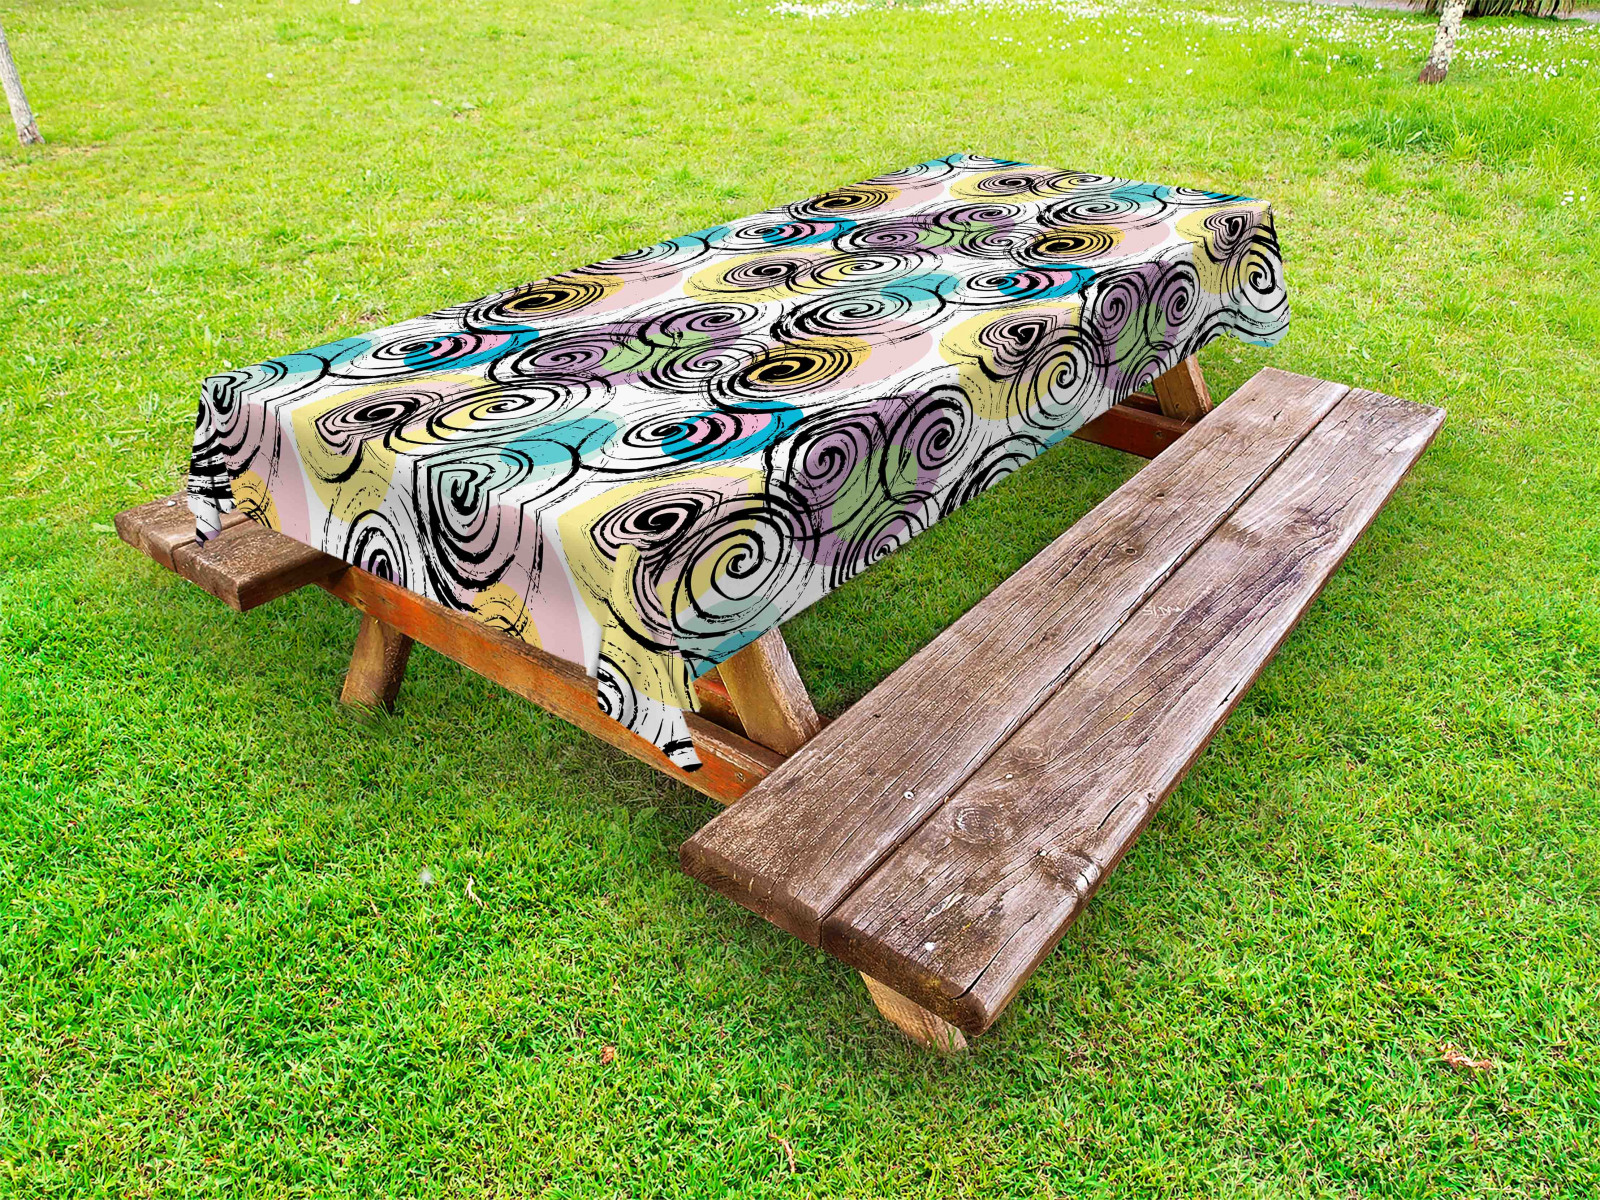 Abstrakt Outdoor Tischdecke Moderne Spiralen und Kreise Gartentisch Servietten - Bild 1 von 1